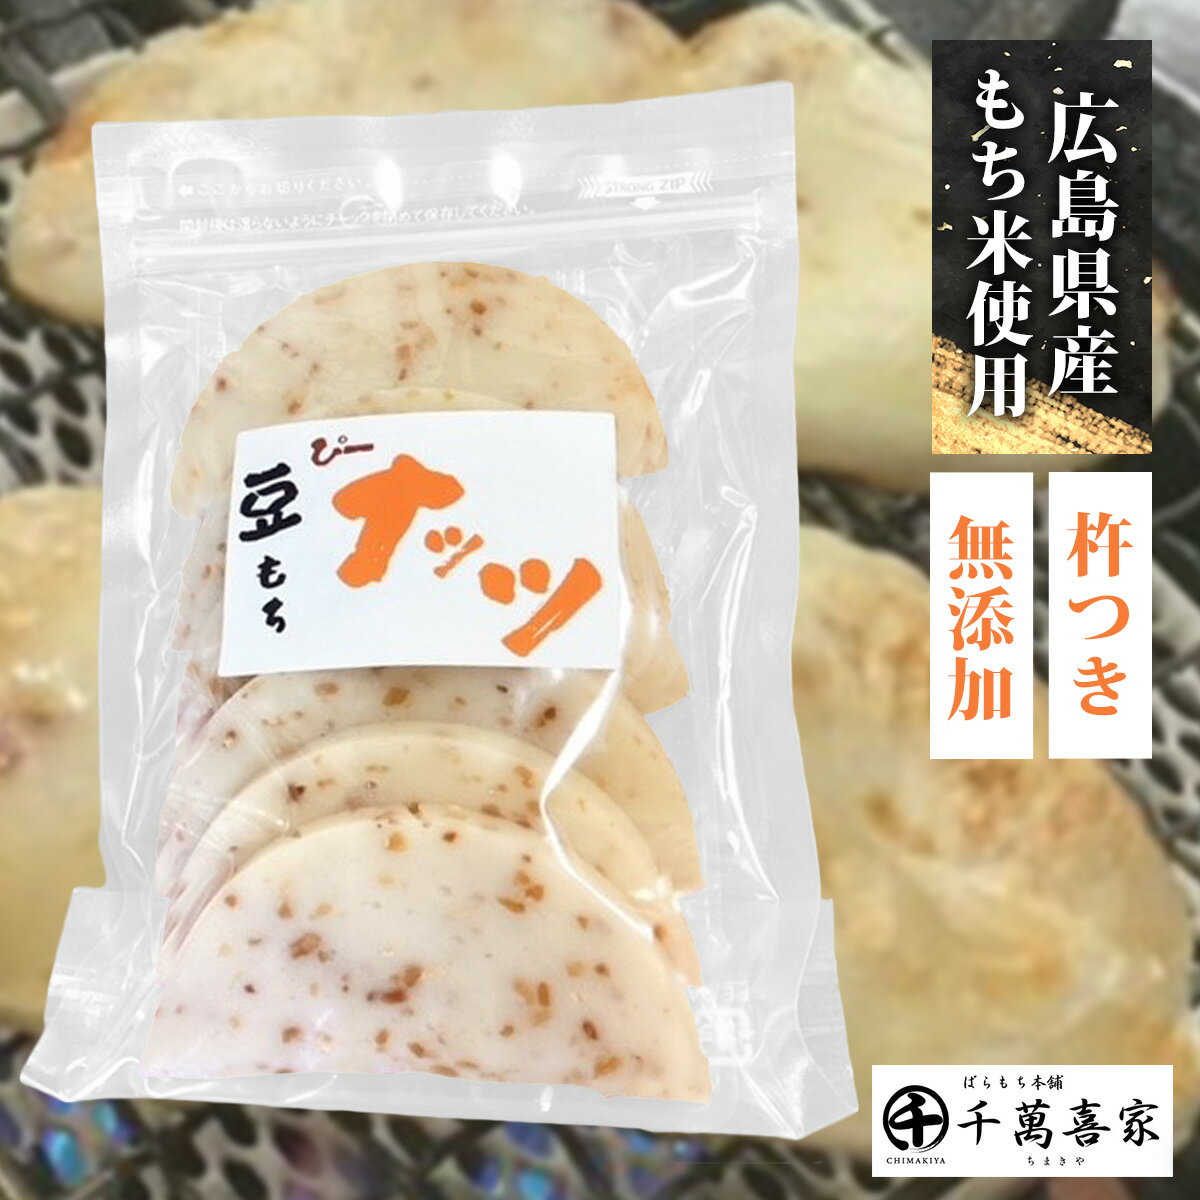 杵つきピーナッツ餅 1袋 もち もち米 餅 豆餅 広島県産1